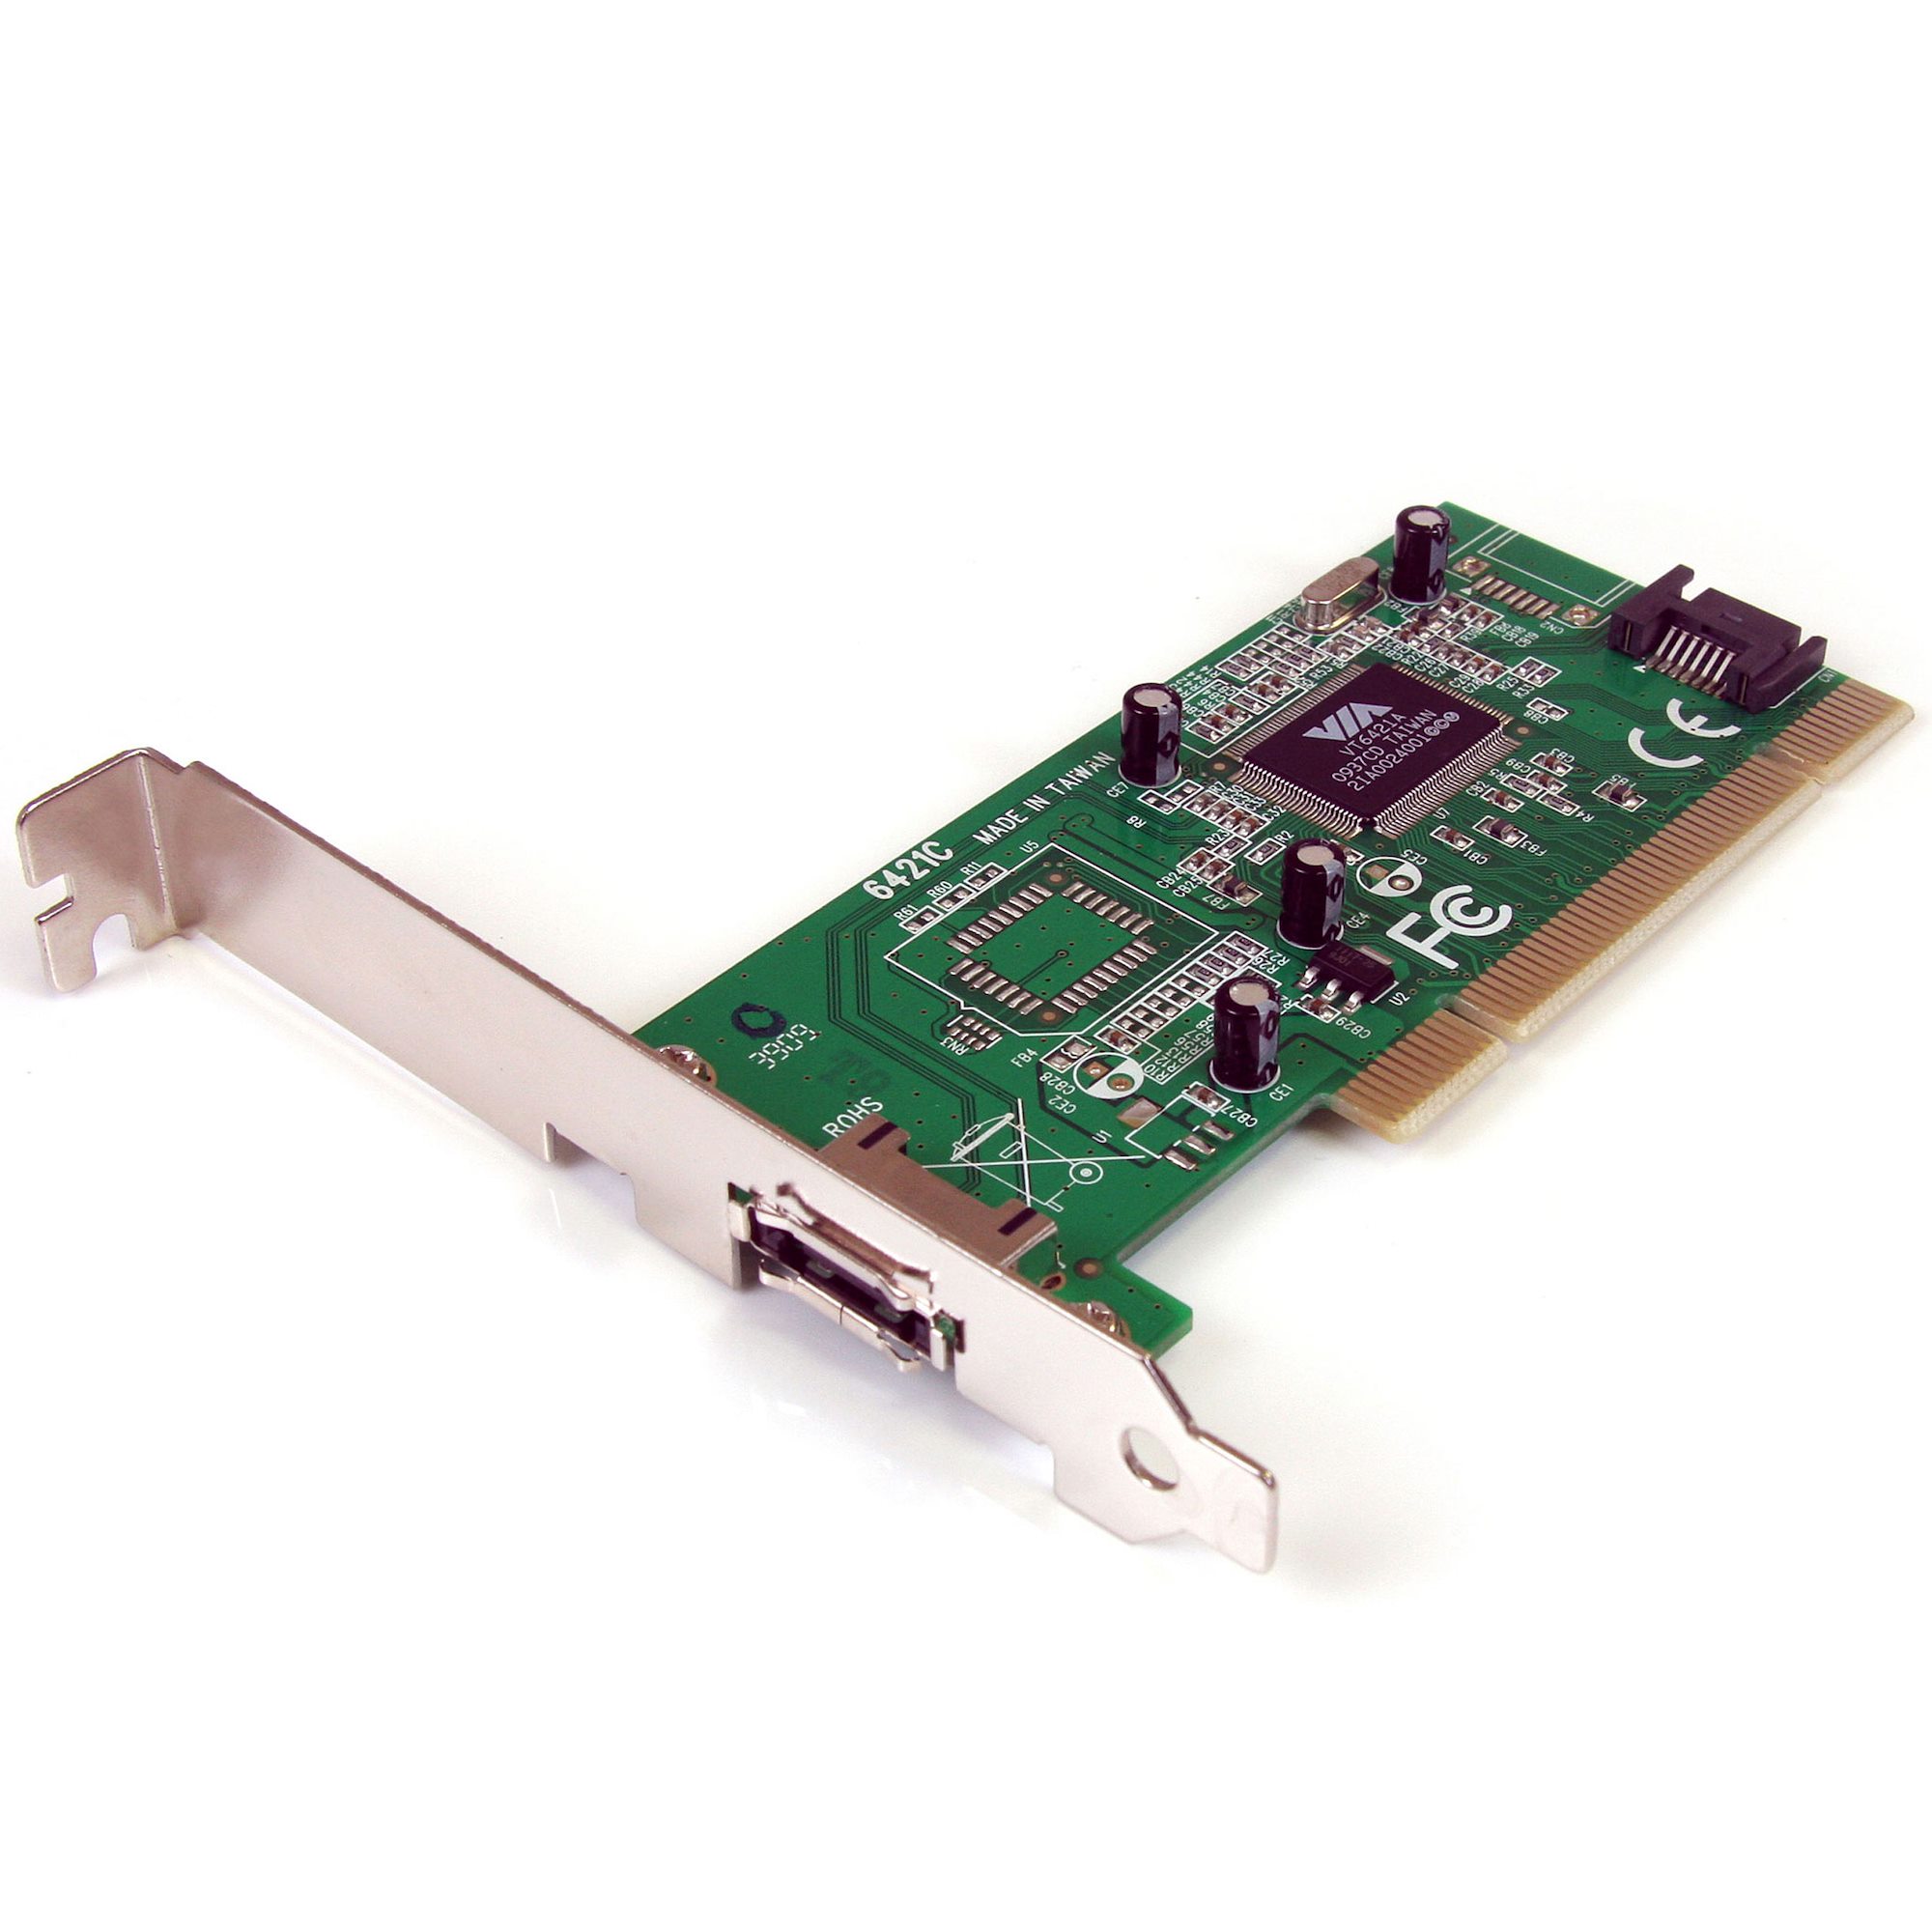 Сетевая карта 64. Raid-контроллер via vt6421. Плата PCI SATA. Плата расширения PCI SATA. Внешний SATA контроллер.